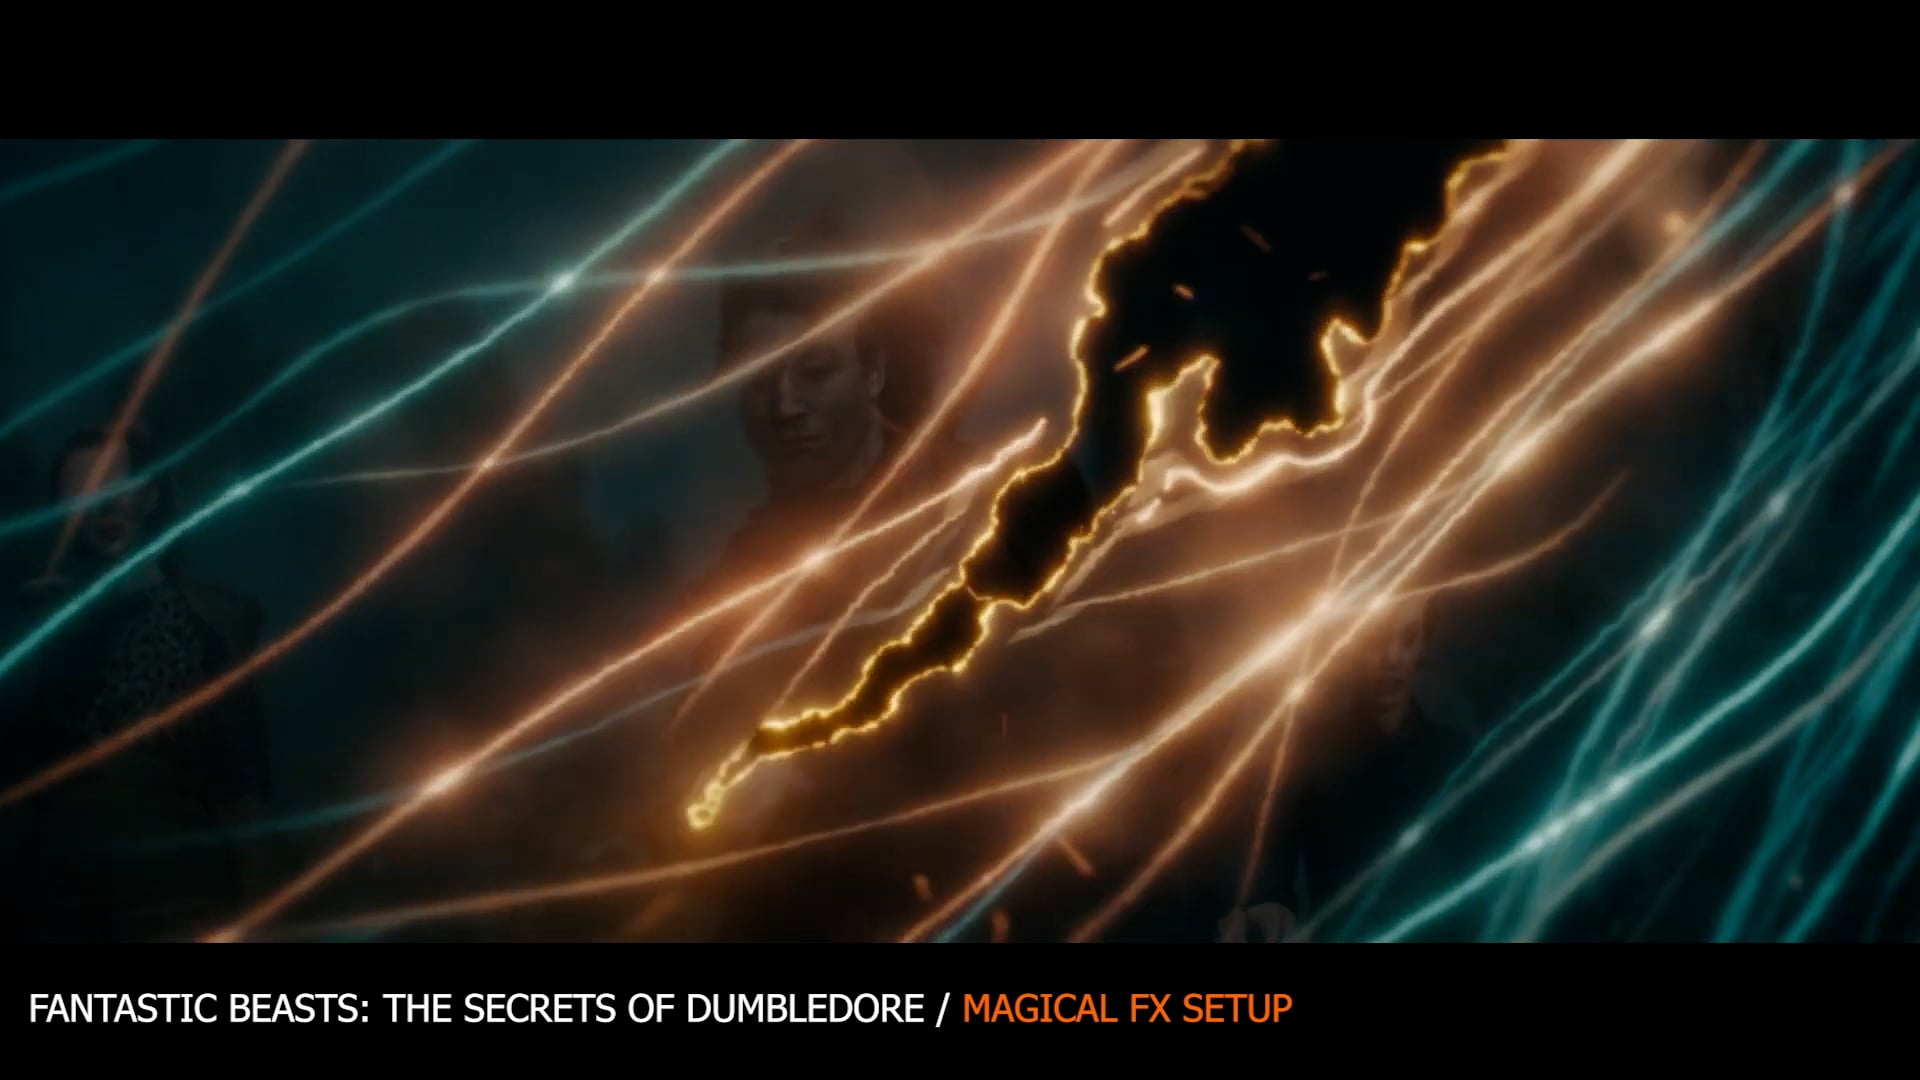 The Secrets of Dumbledore / Magical FX